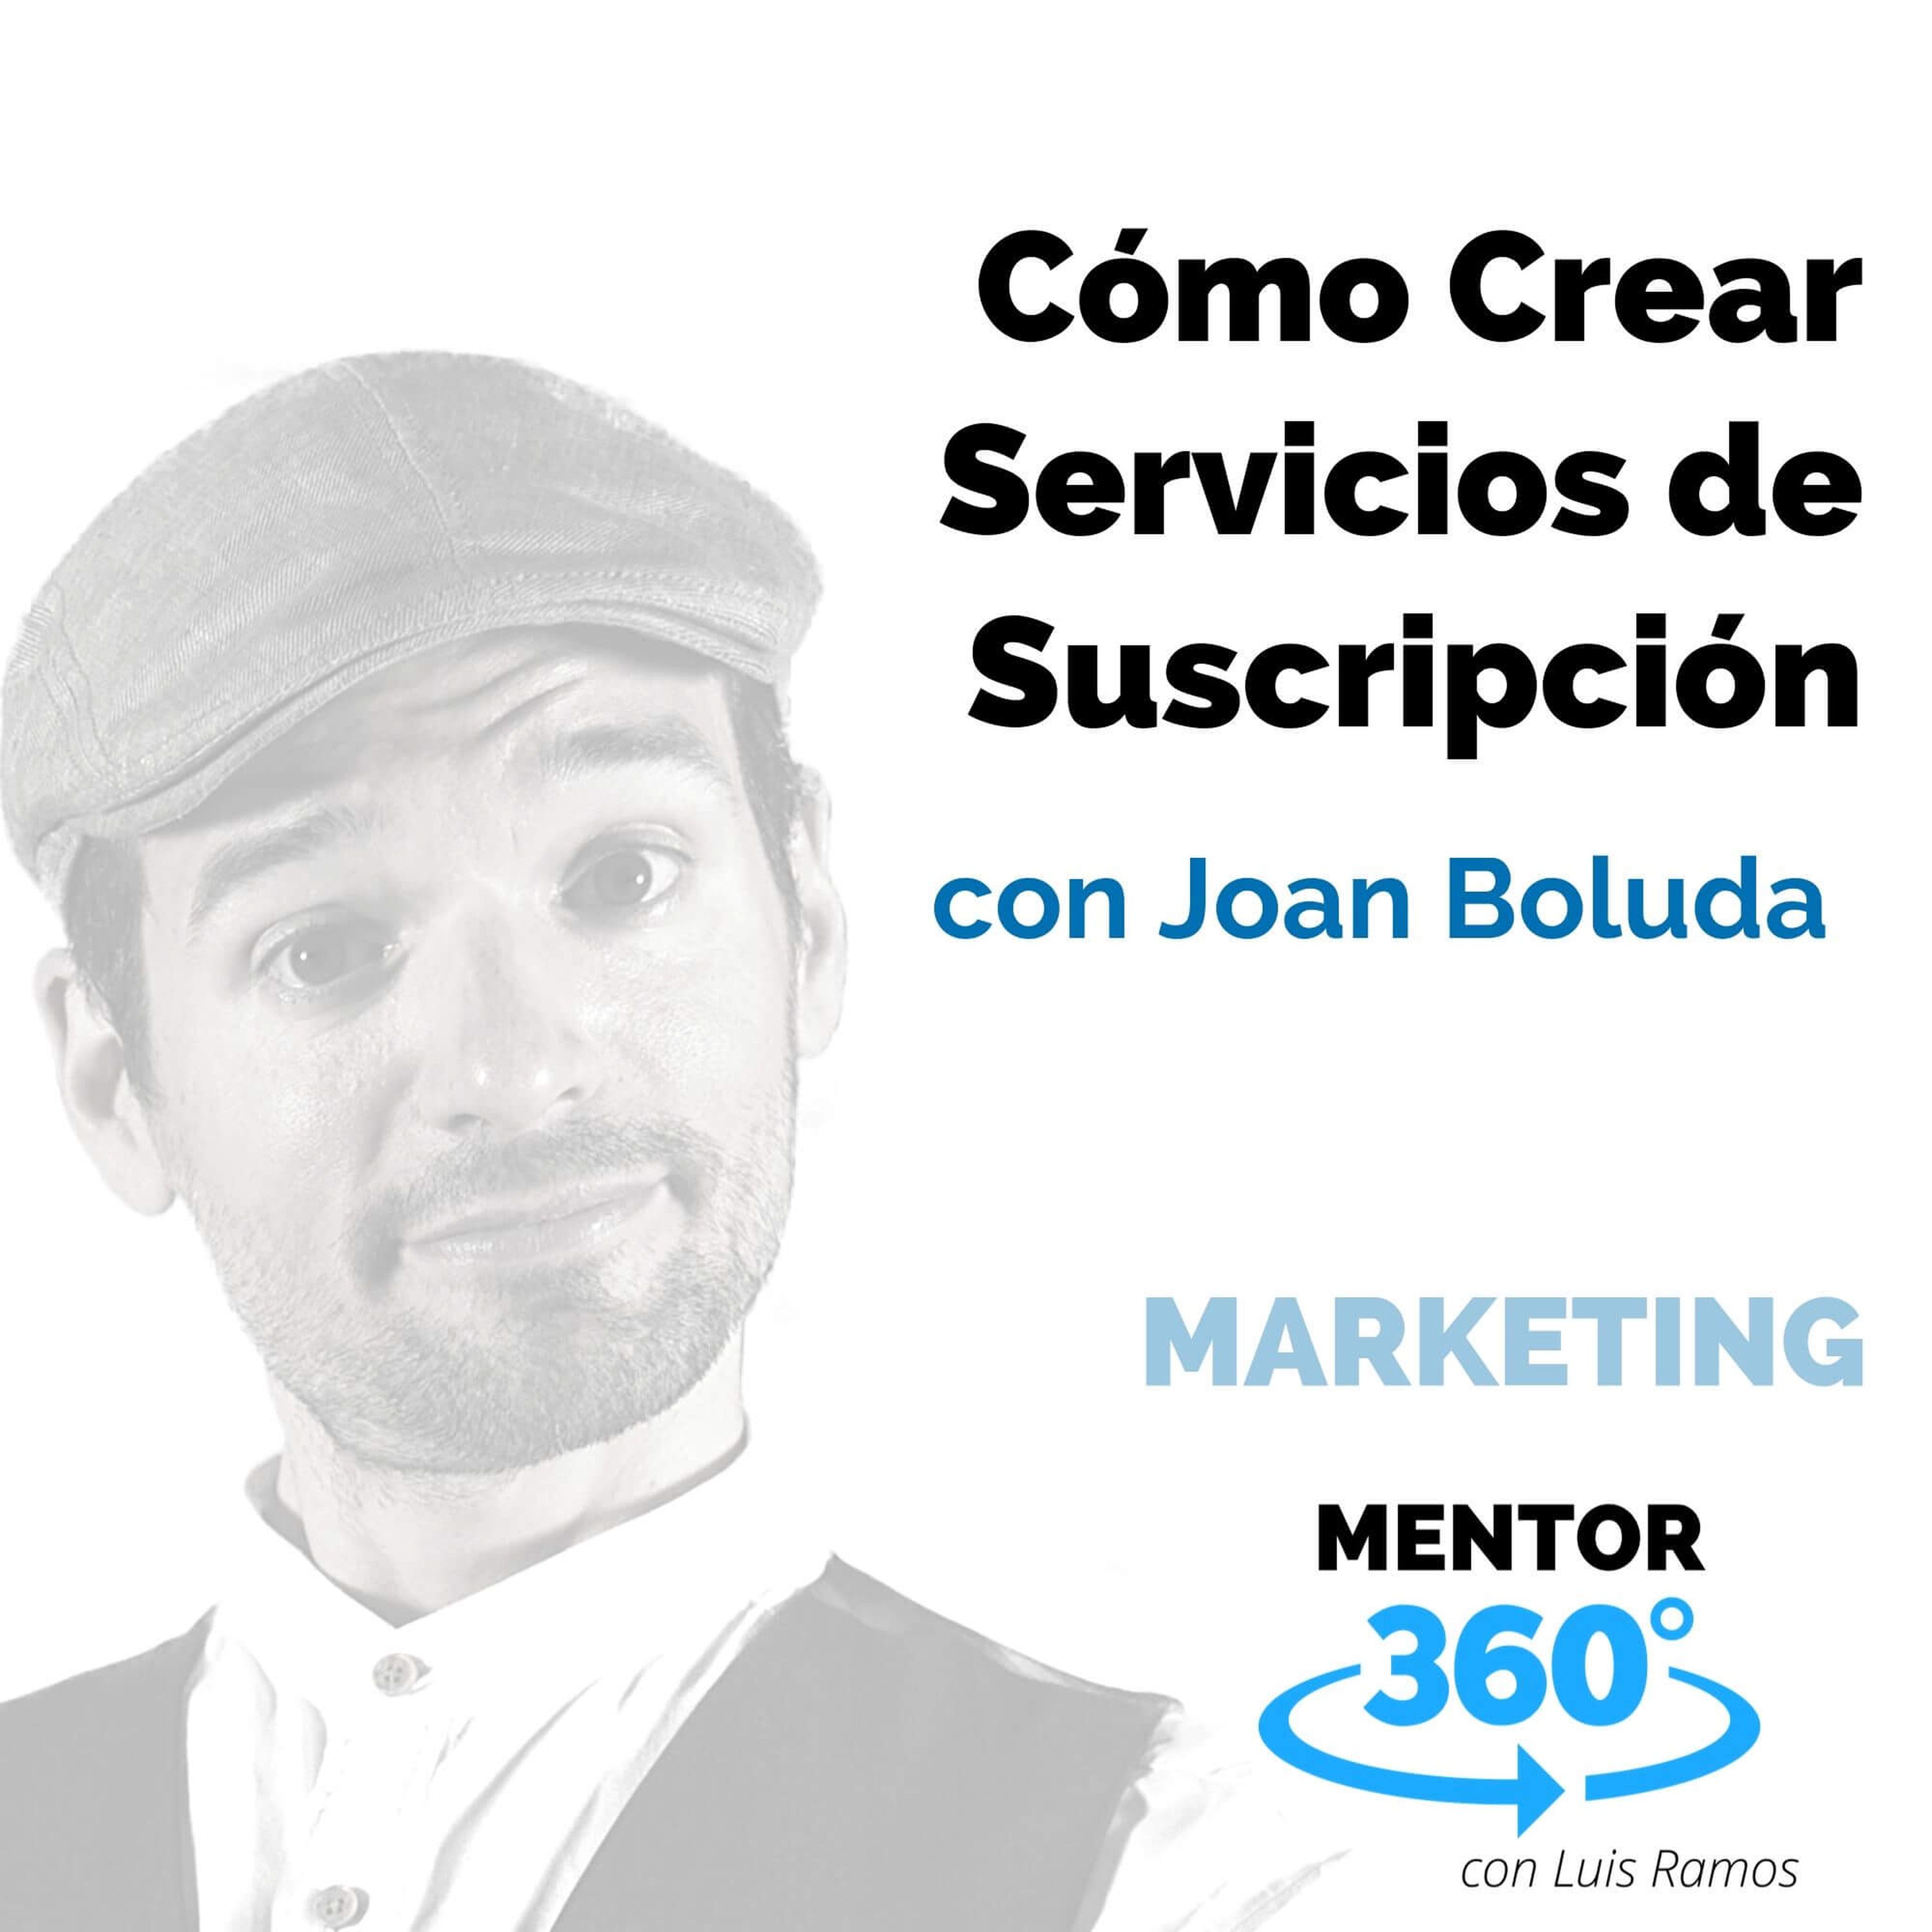 Cómo Crear Servicios de Suscripción, con Joan Boluda - MARKETING